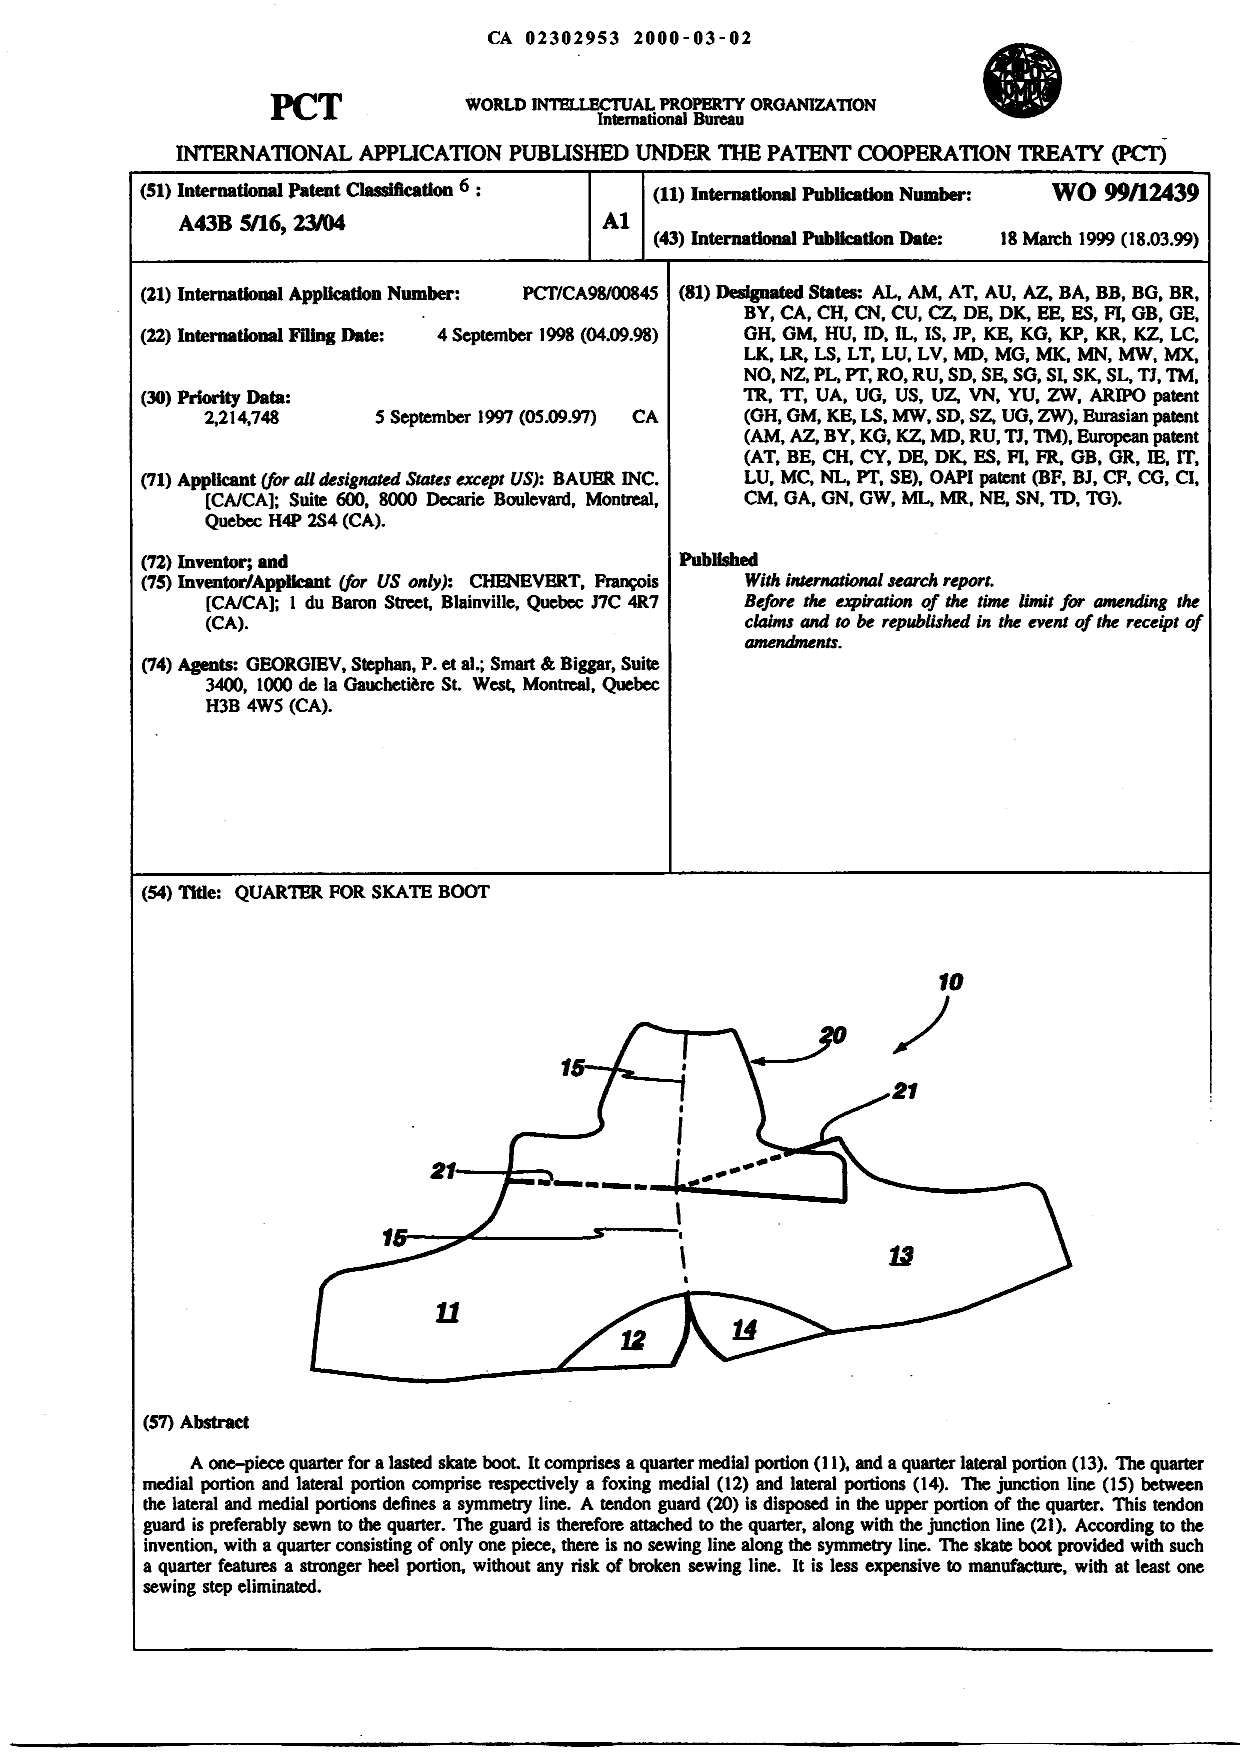 Document de brevet canadien 2302953. Abrégé 19991202. Image 1 de 1